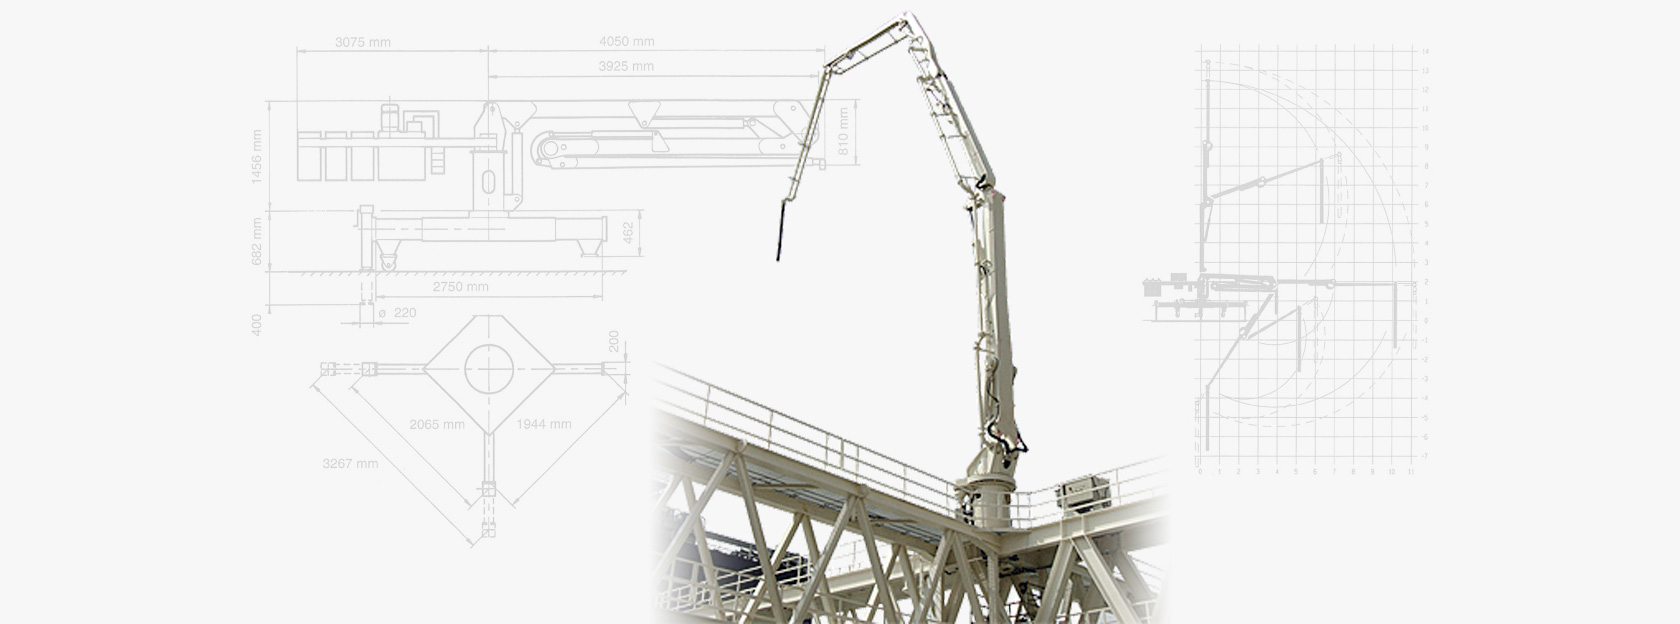 En SEBHSA fabricamos brazos estacionarios y rotativos a medida para distribución de hormigón en la construcción de puertos y rascacielos.